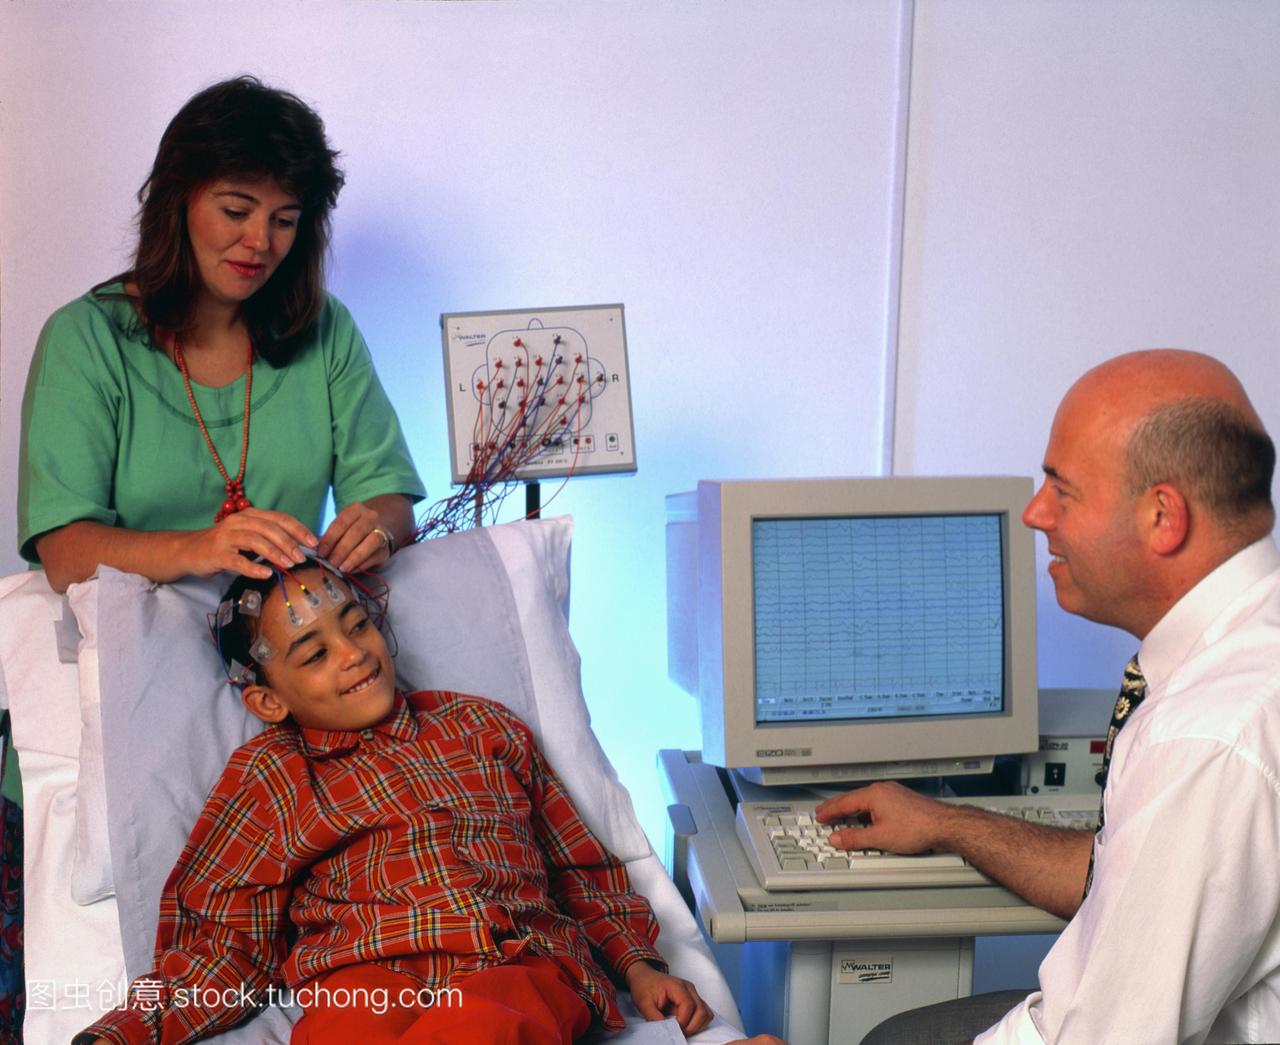 图。医生监控一个年轻男孩的大脑活动脑电波使